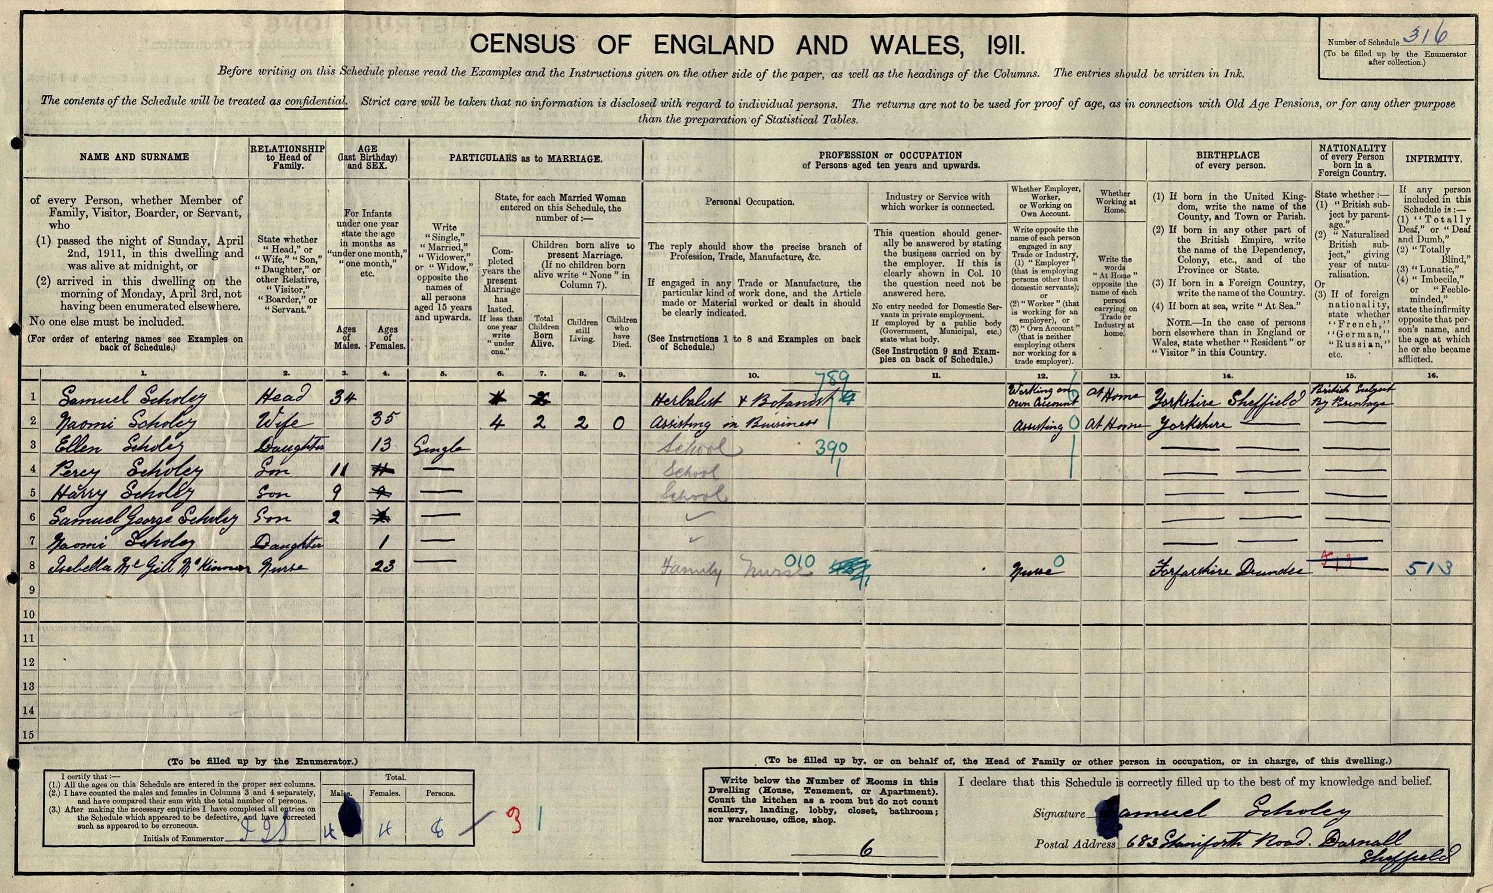 Samuel Scholey Census 1911.jpg